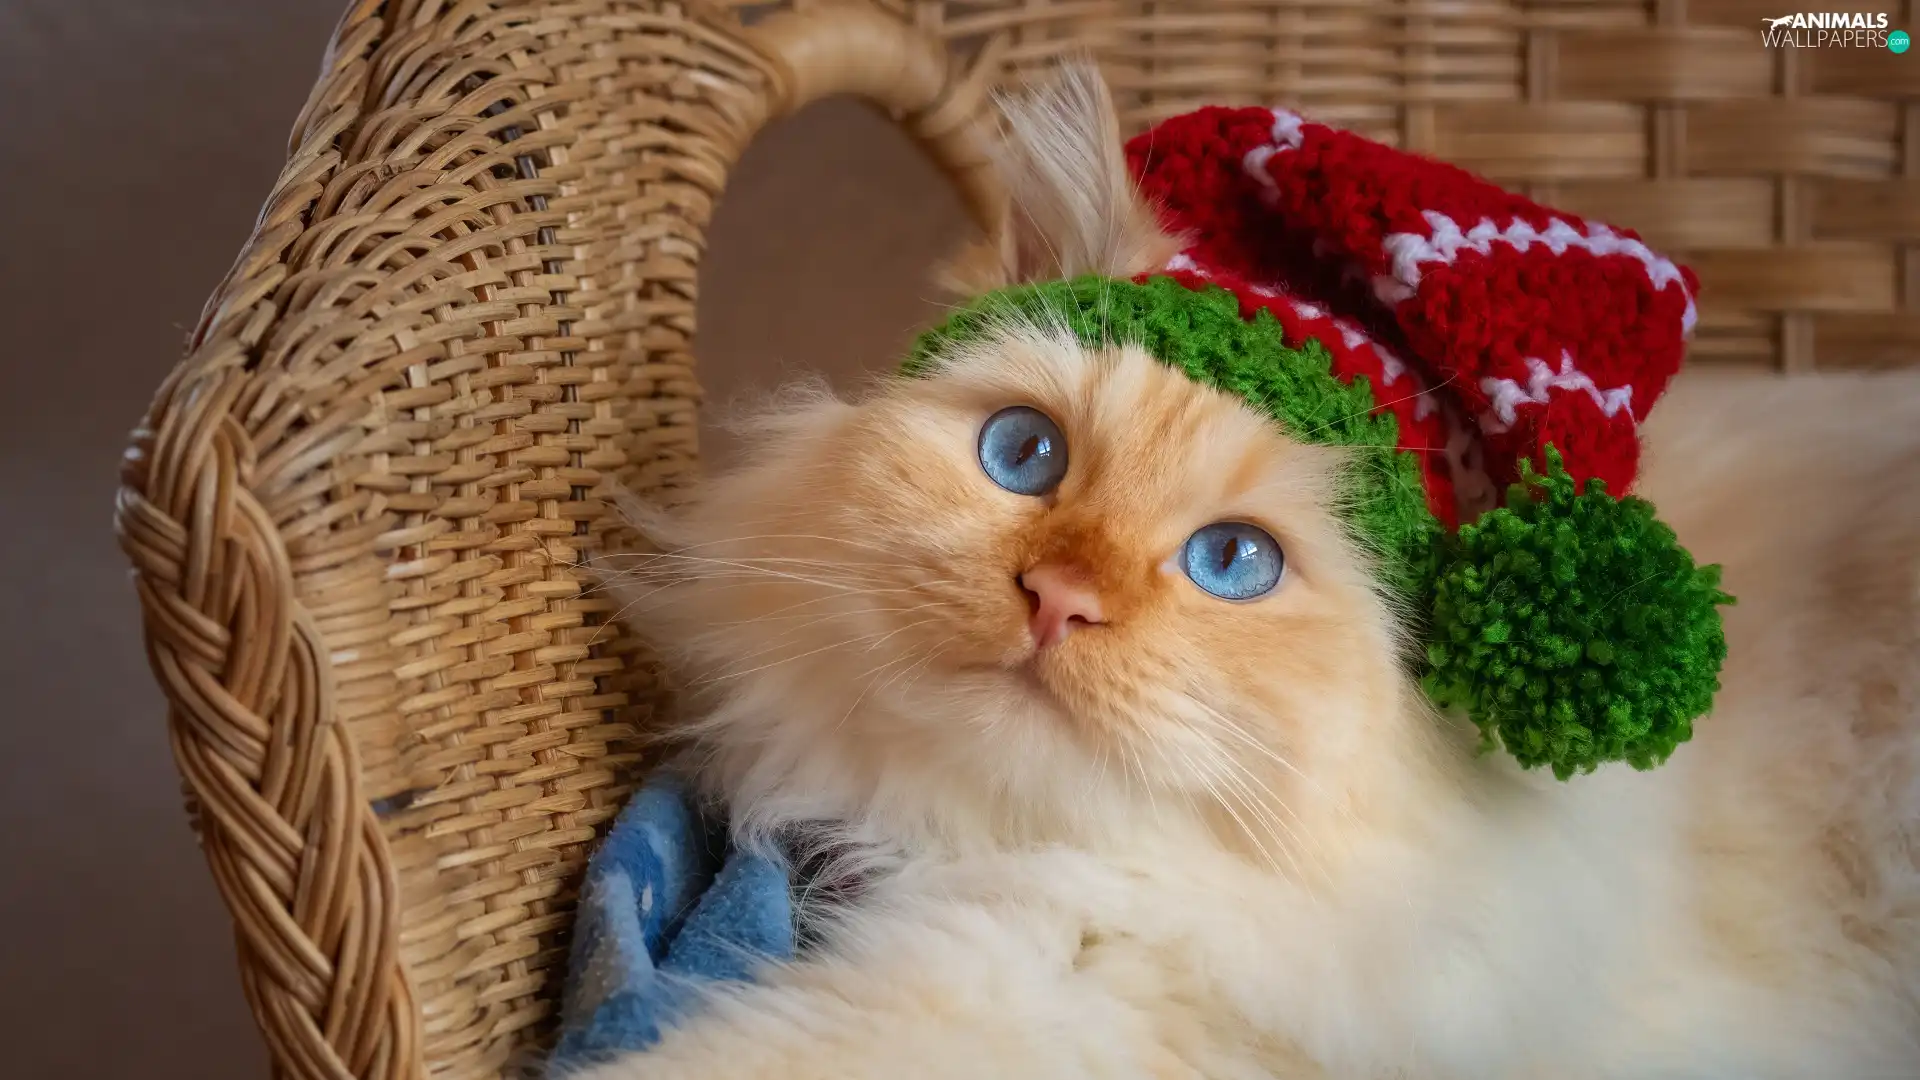 Blue, cat, wicker, basket, Eyes, Hat